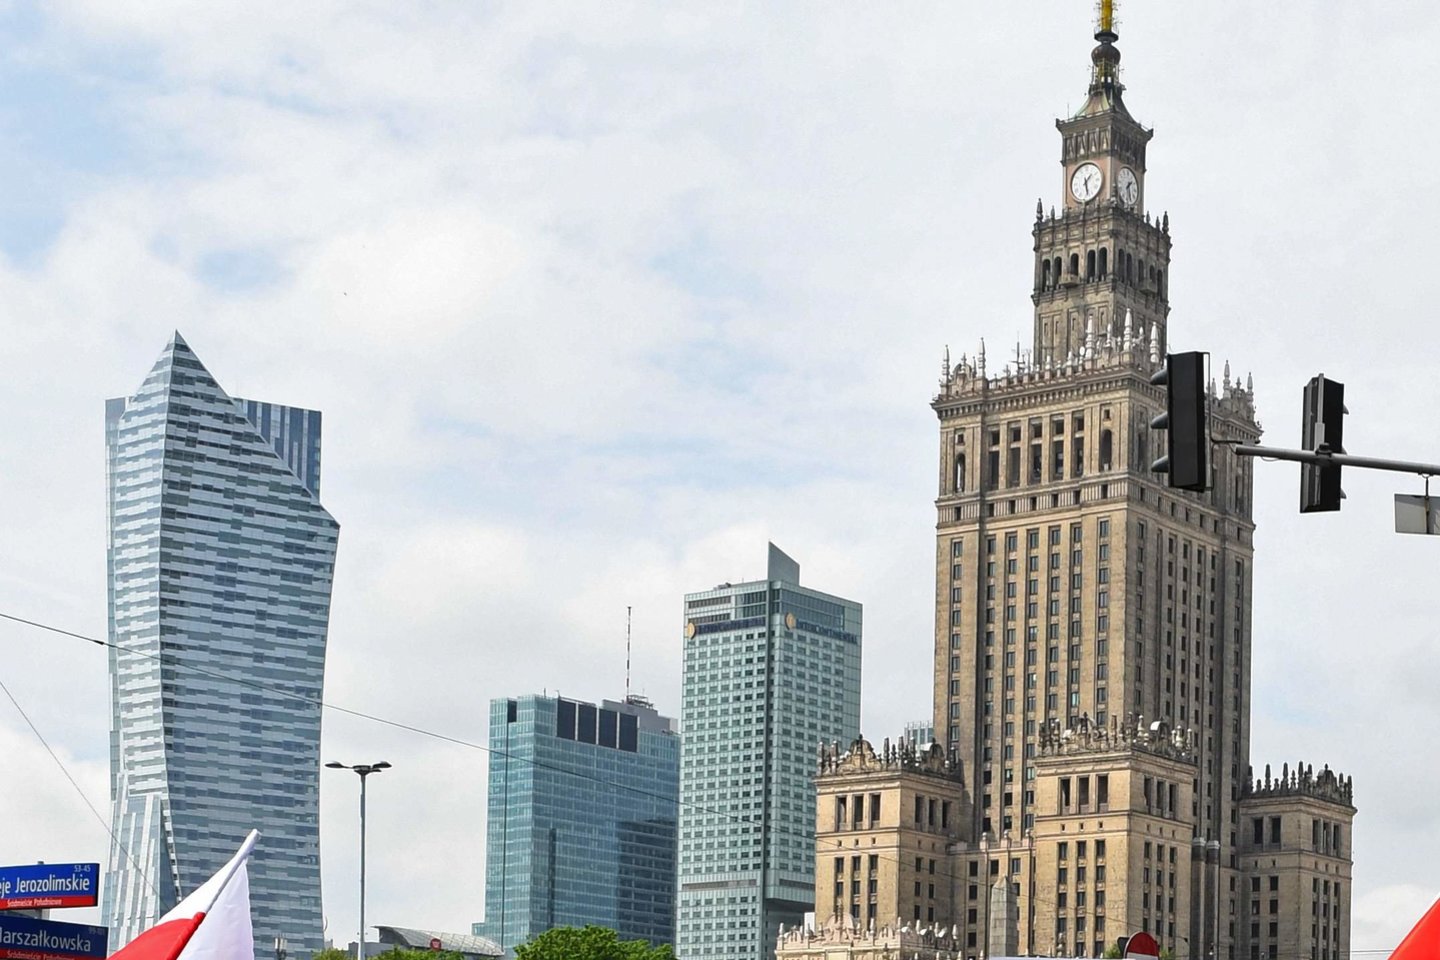  Savaitgalis Varšuvoje lietuviams – populiarus pasirinkimas. <br> AFP/Scanpix nuotr.